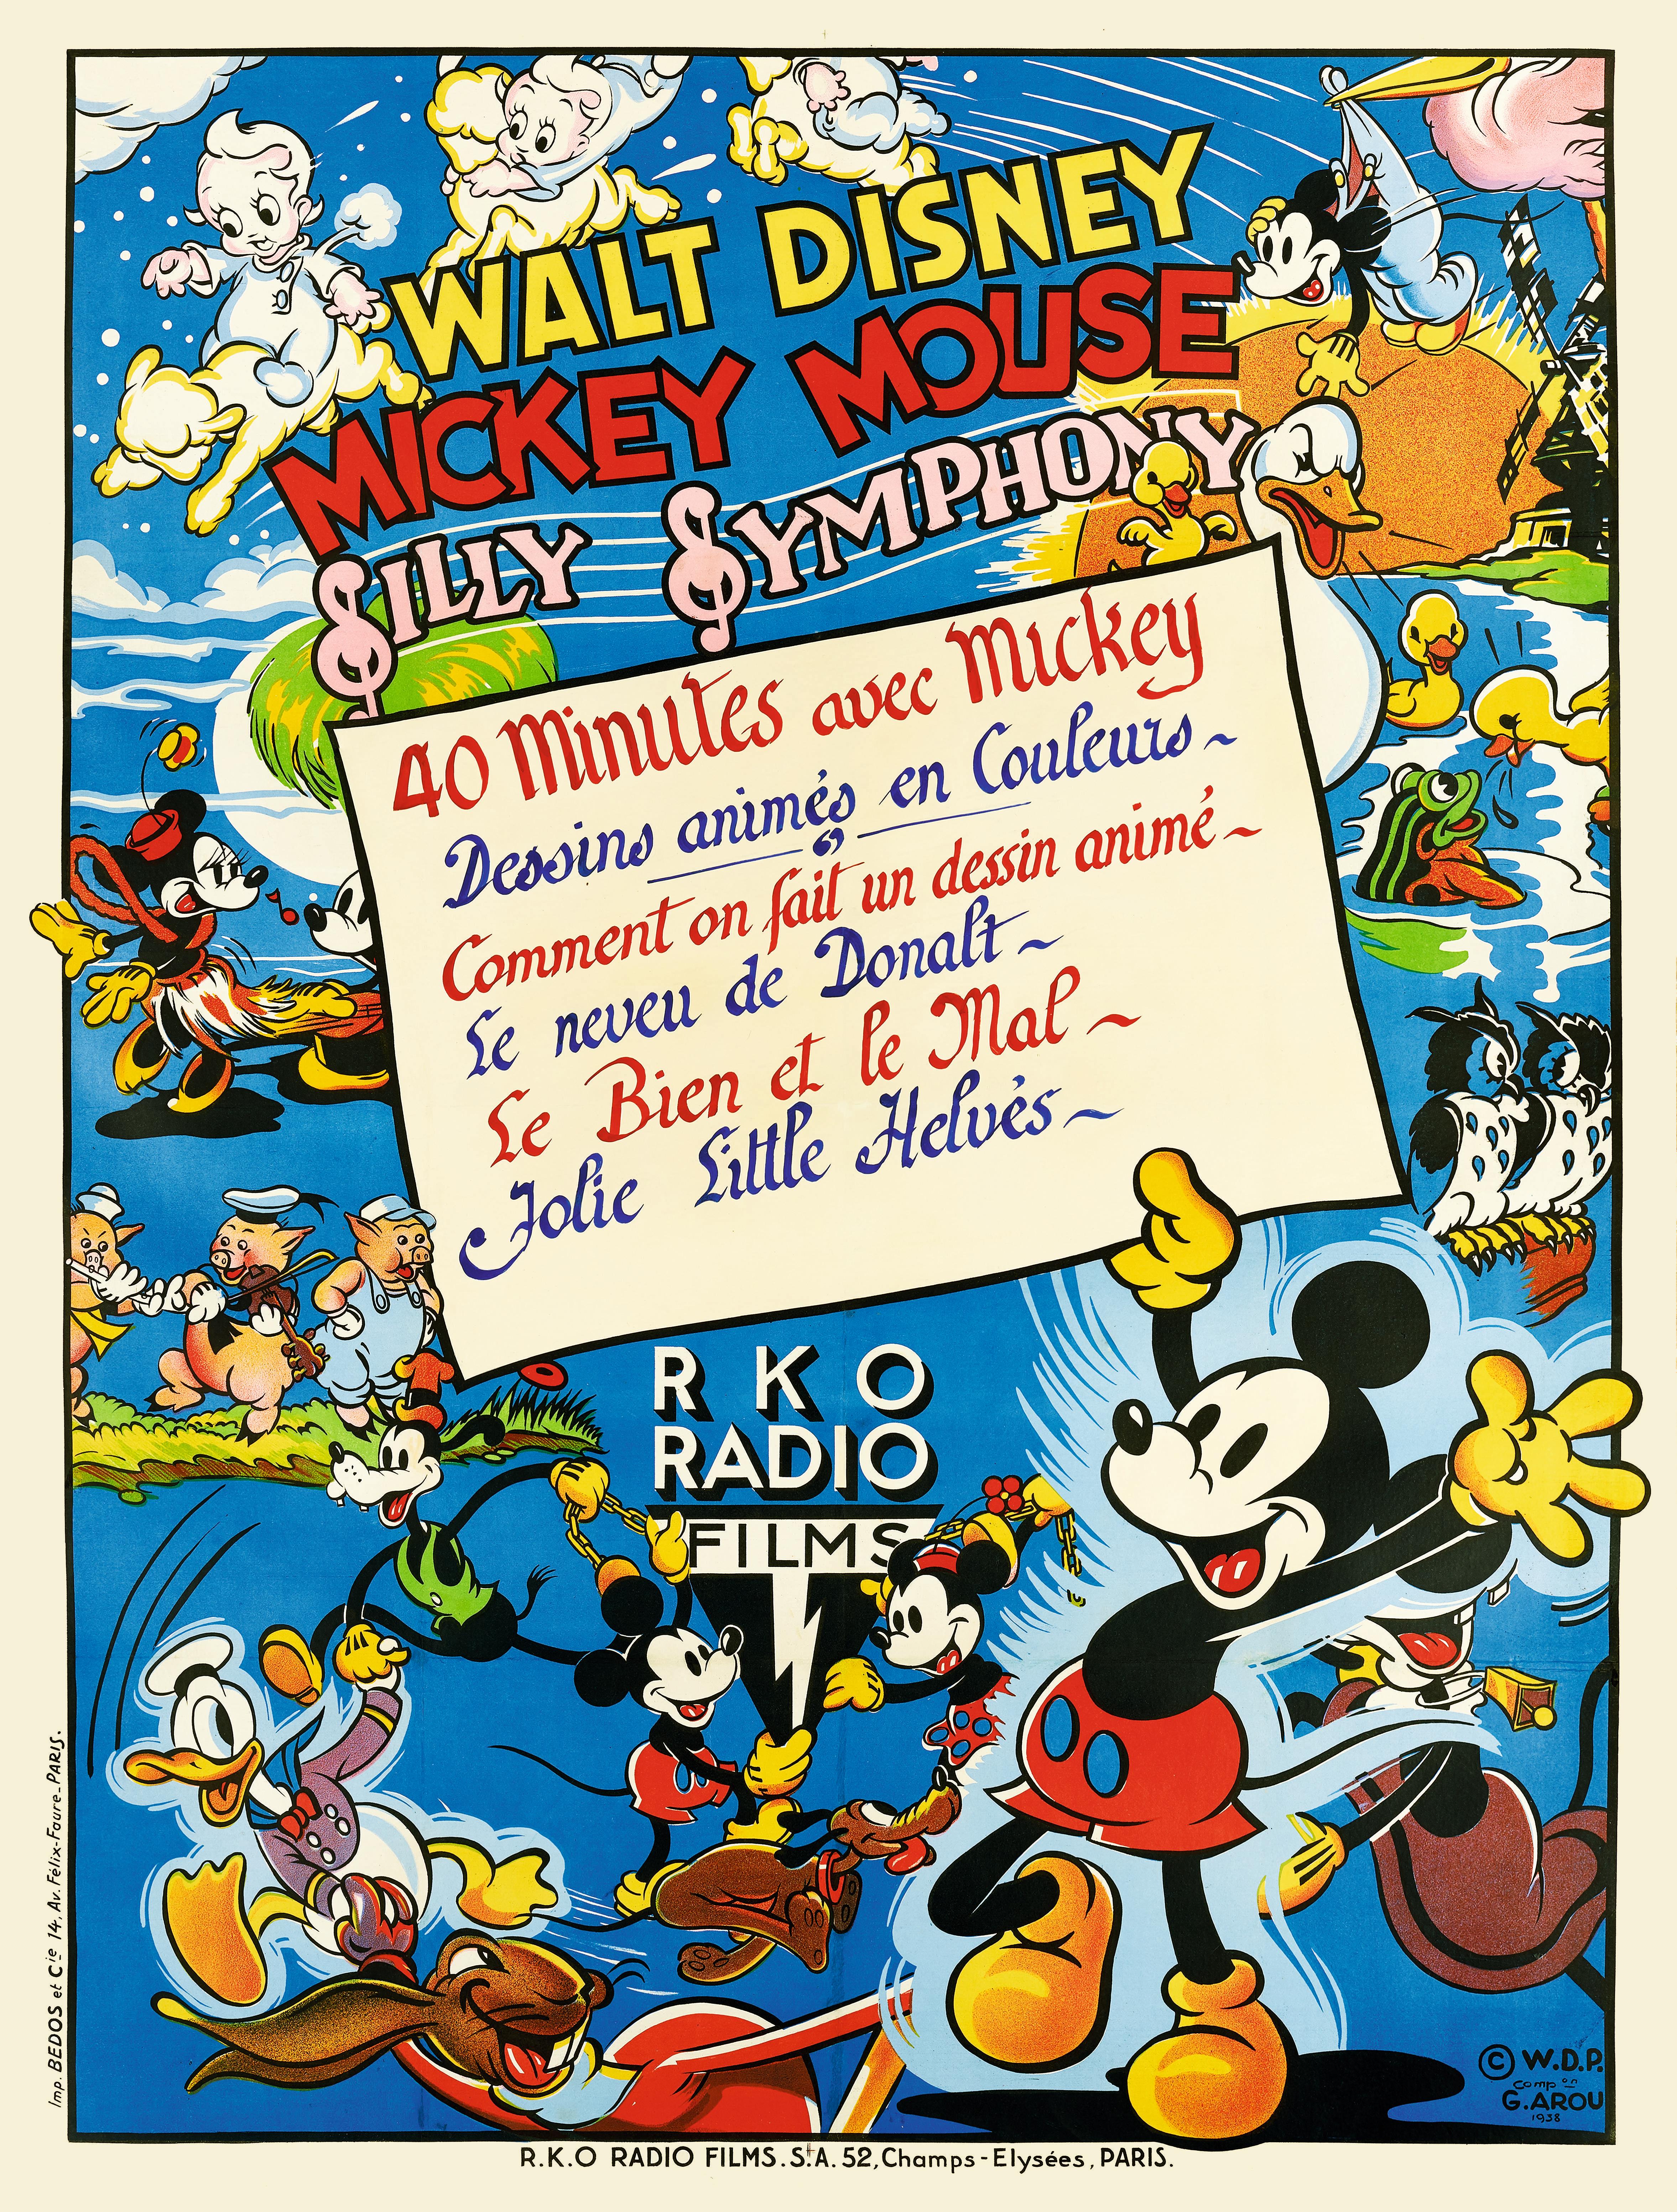 Originales französisches Filmplakat für Mickey Mouse - Silly Symphony 1938. Bis heute ist dies vermutlich das einzige bekannte erhaltene Exemplar.
Die Silly Symphonies waren eine von Walt Disney produzierte Serie von fünfundsiebzig Kurzfilmen, die